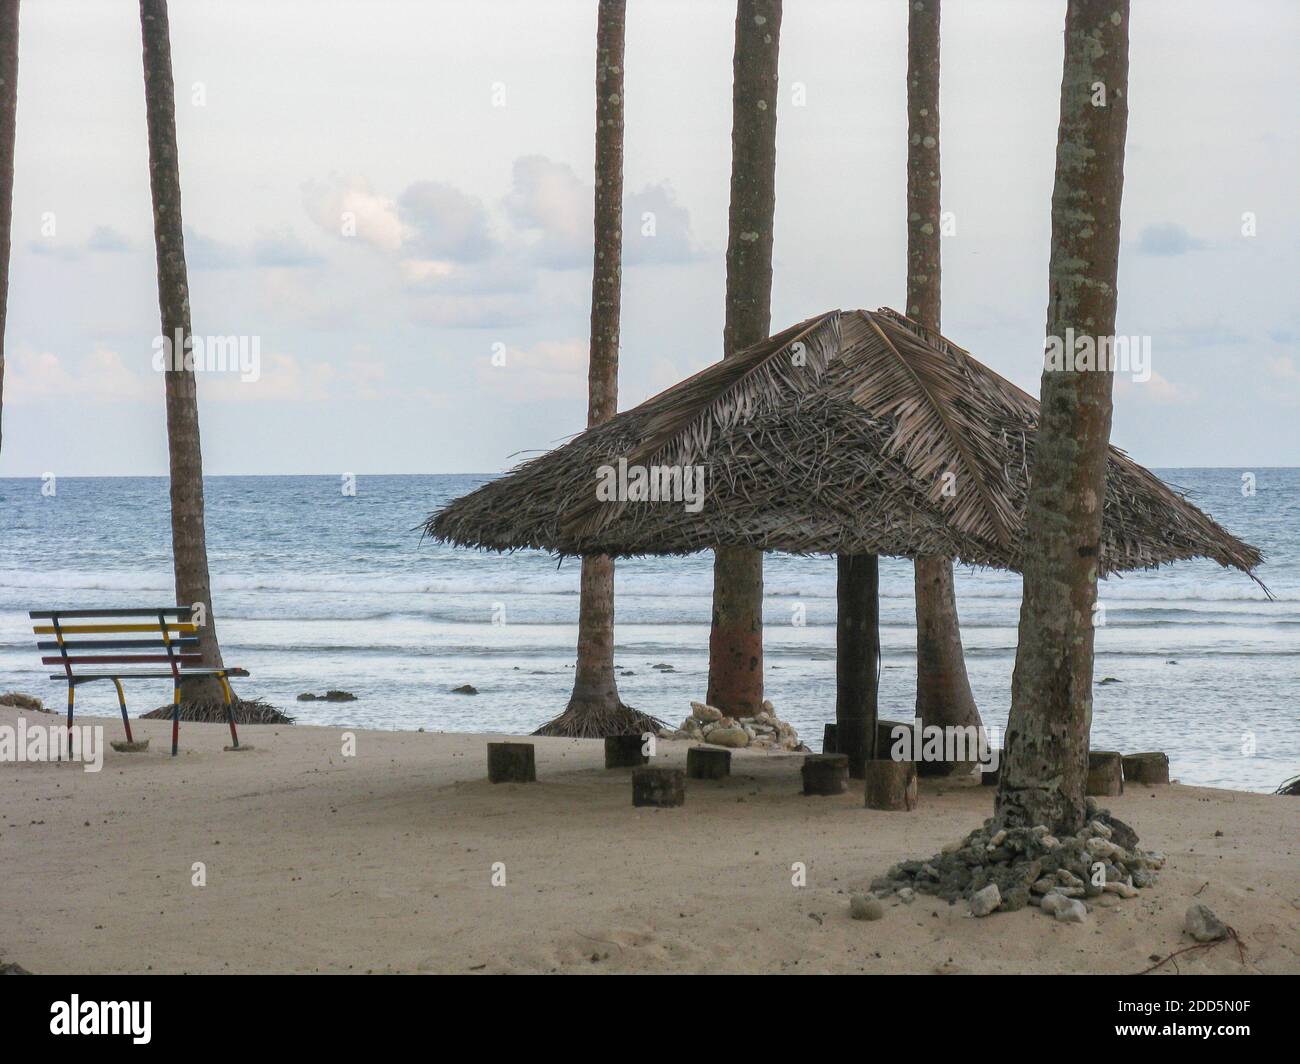 Immagine di silhouette di una tonalità di paglia con una panca a. Siediti su una spiaggia a Port Blair in Andaman e. Nicobar Isole India Foto Stock